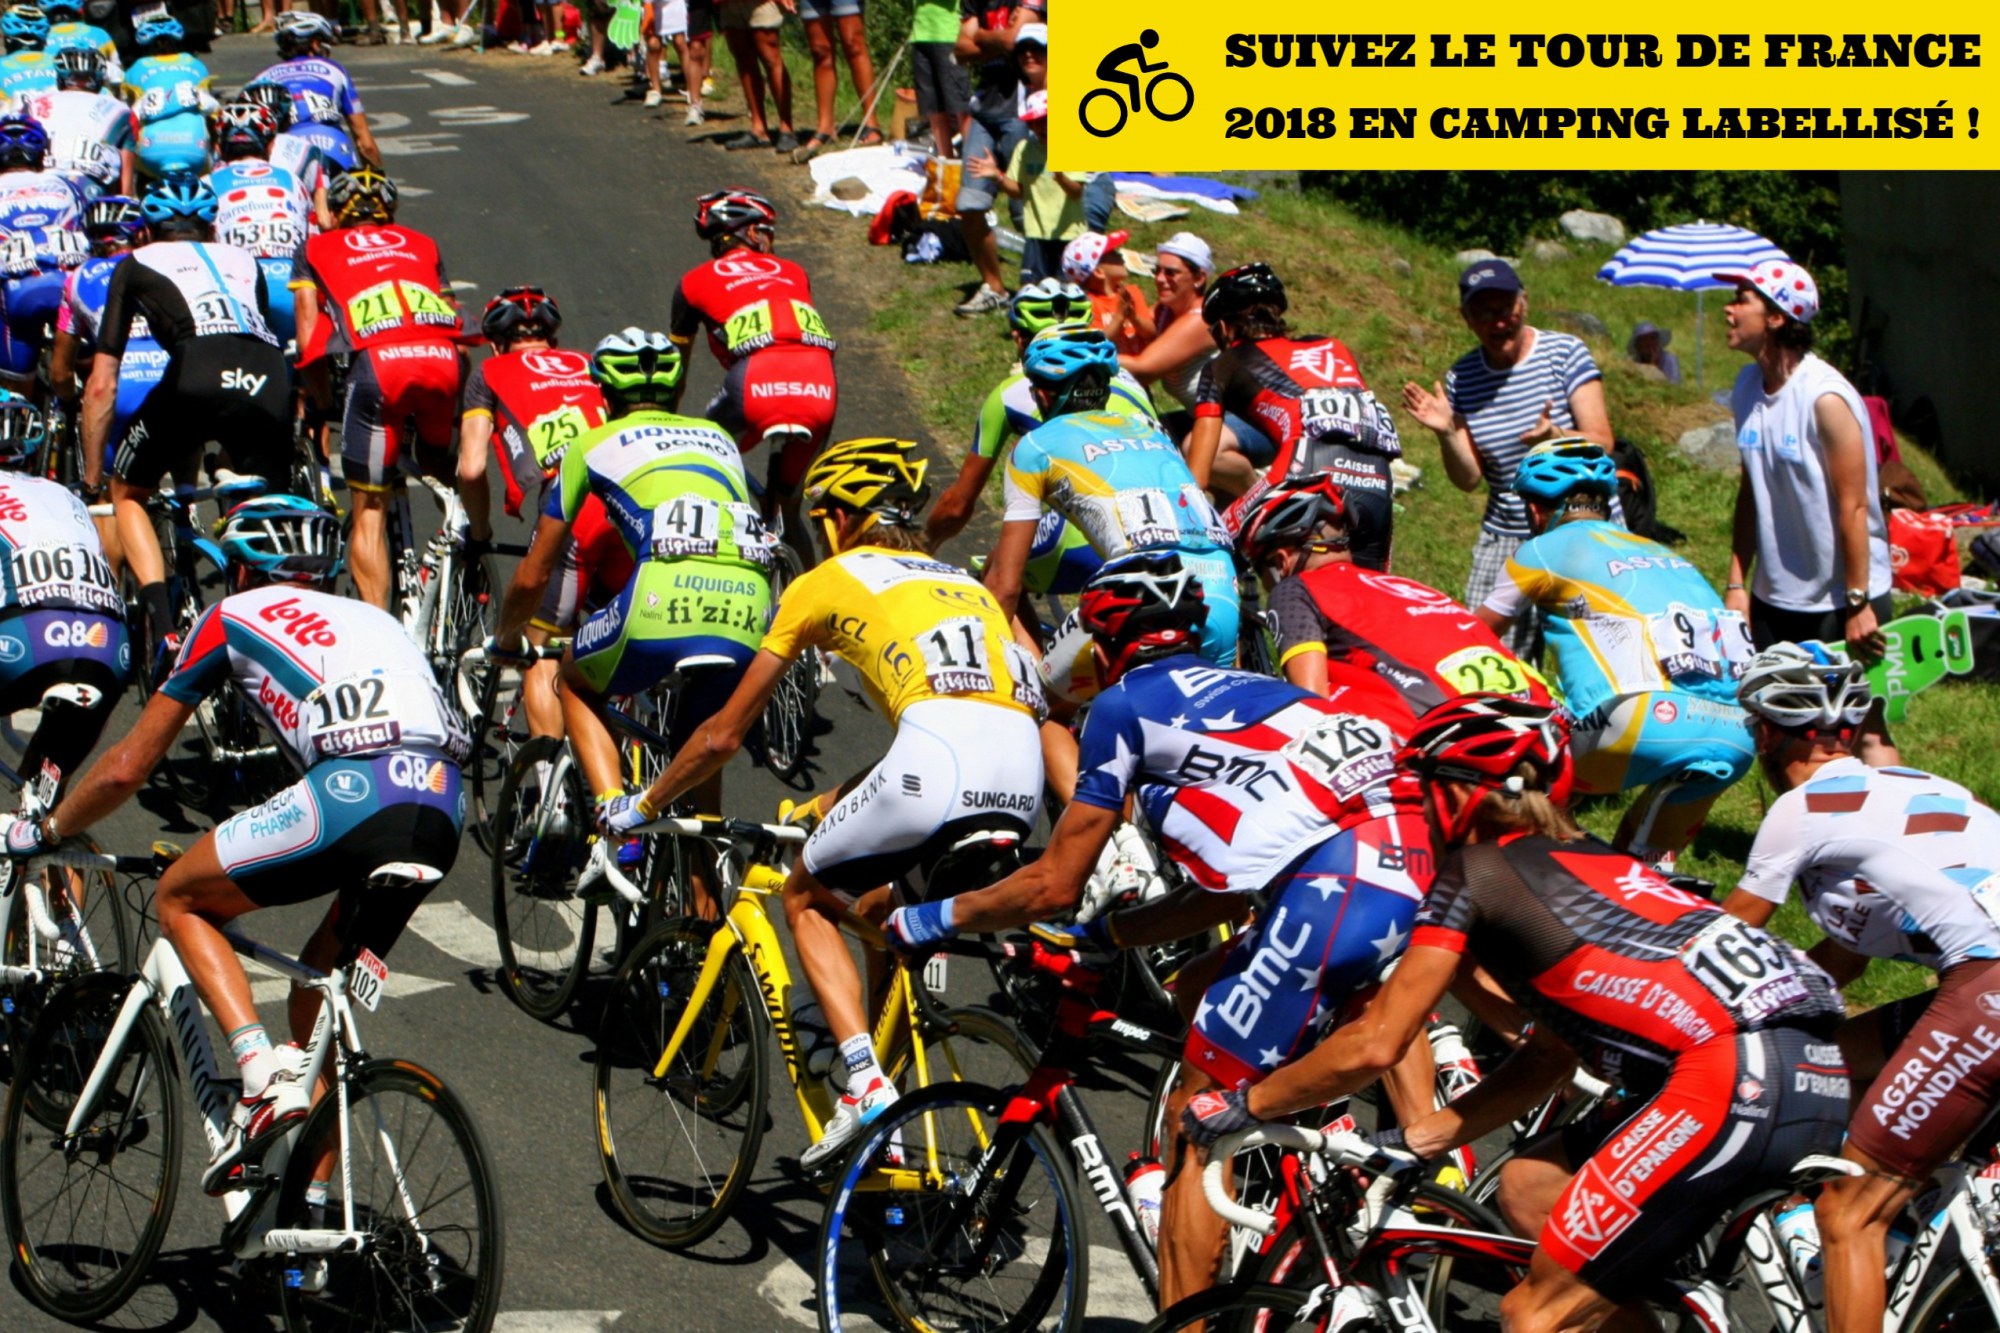 Suivez le Tour de France 2018 en camping labellisé !